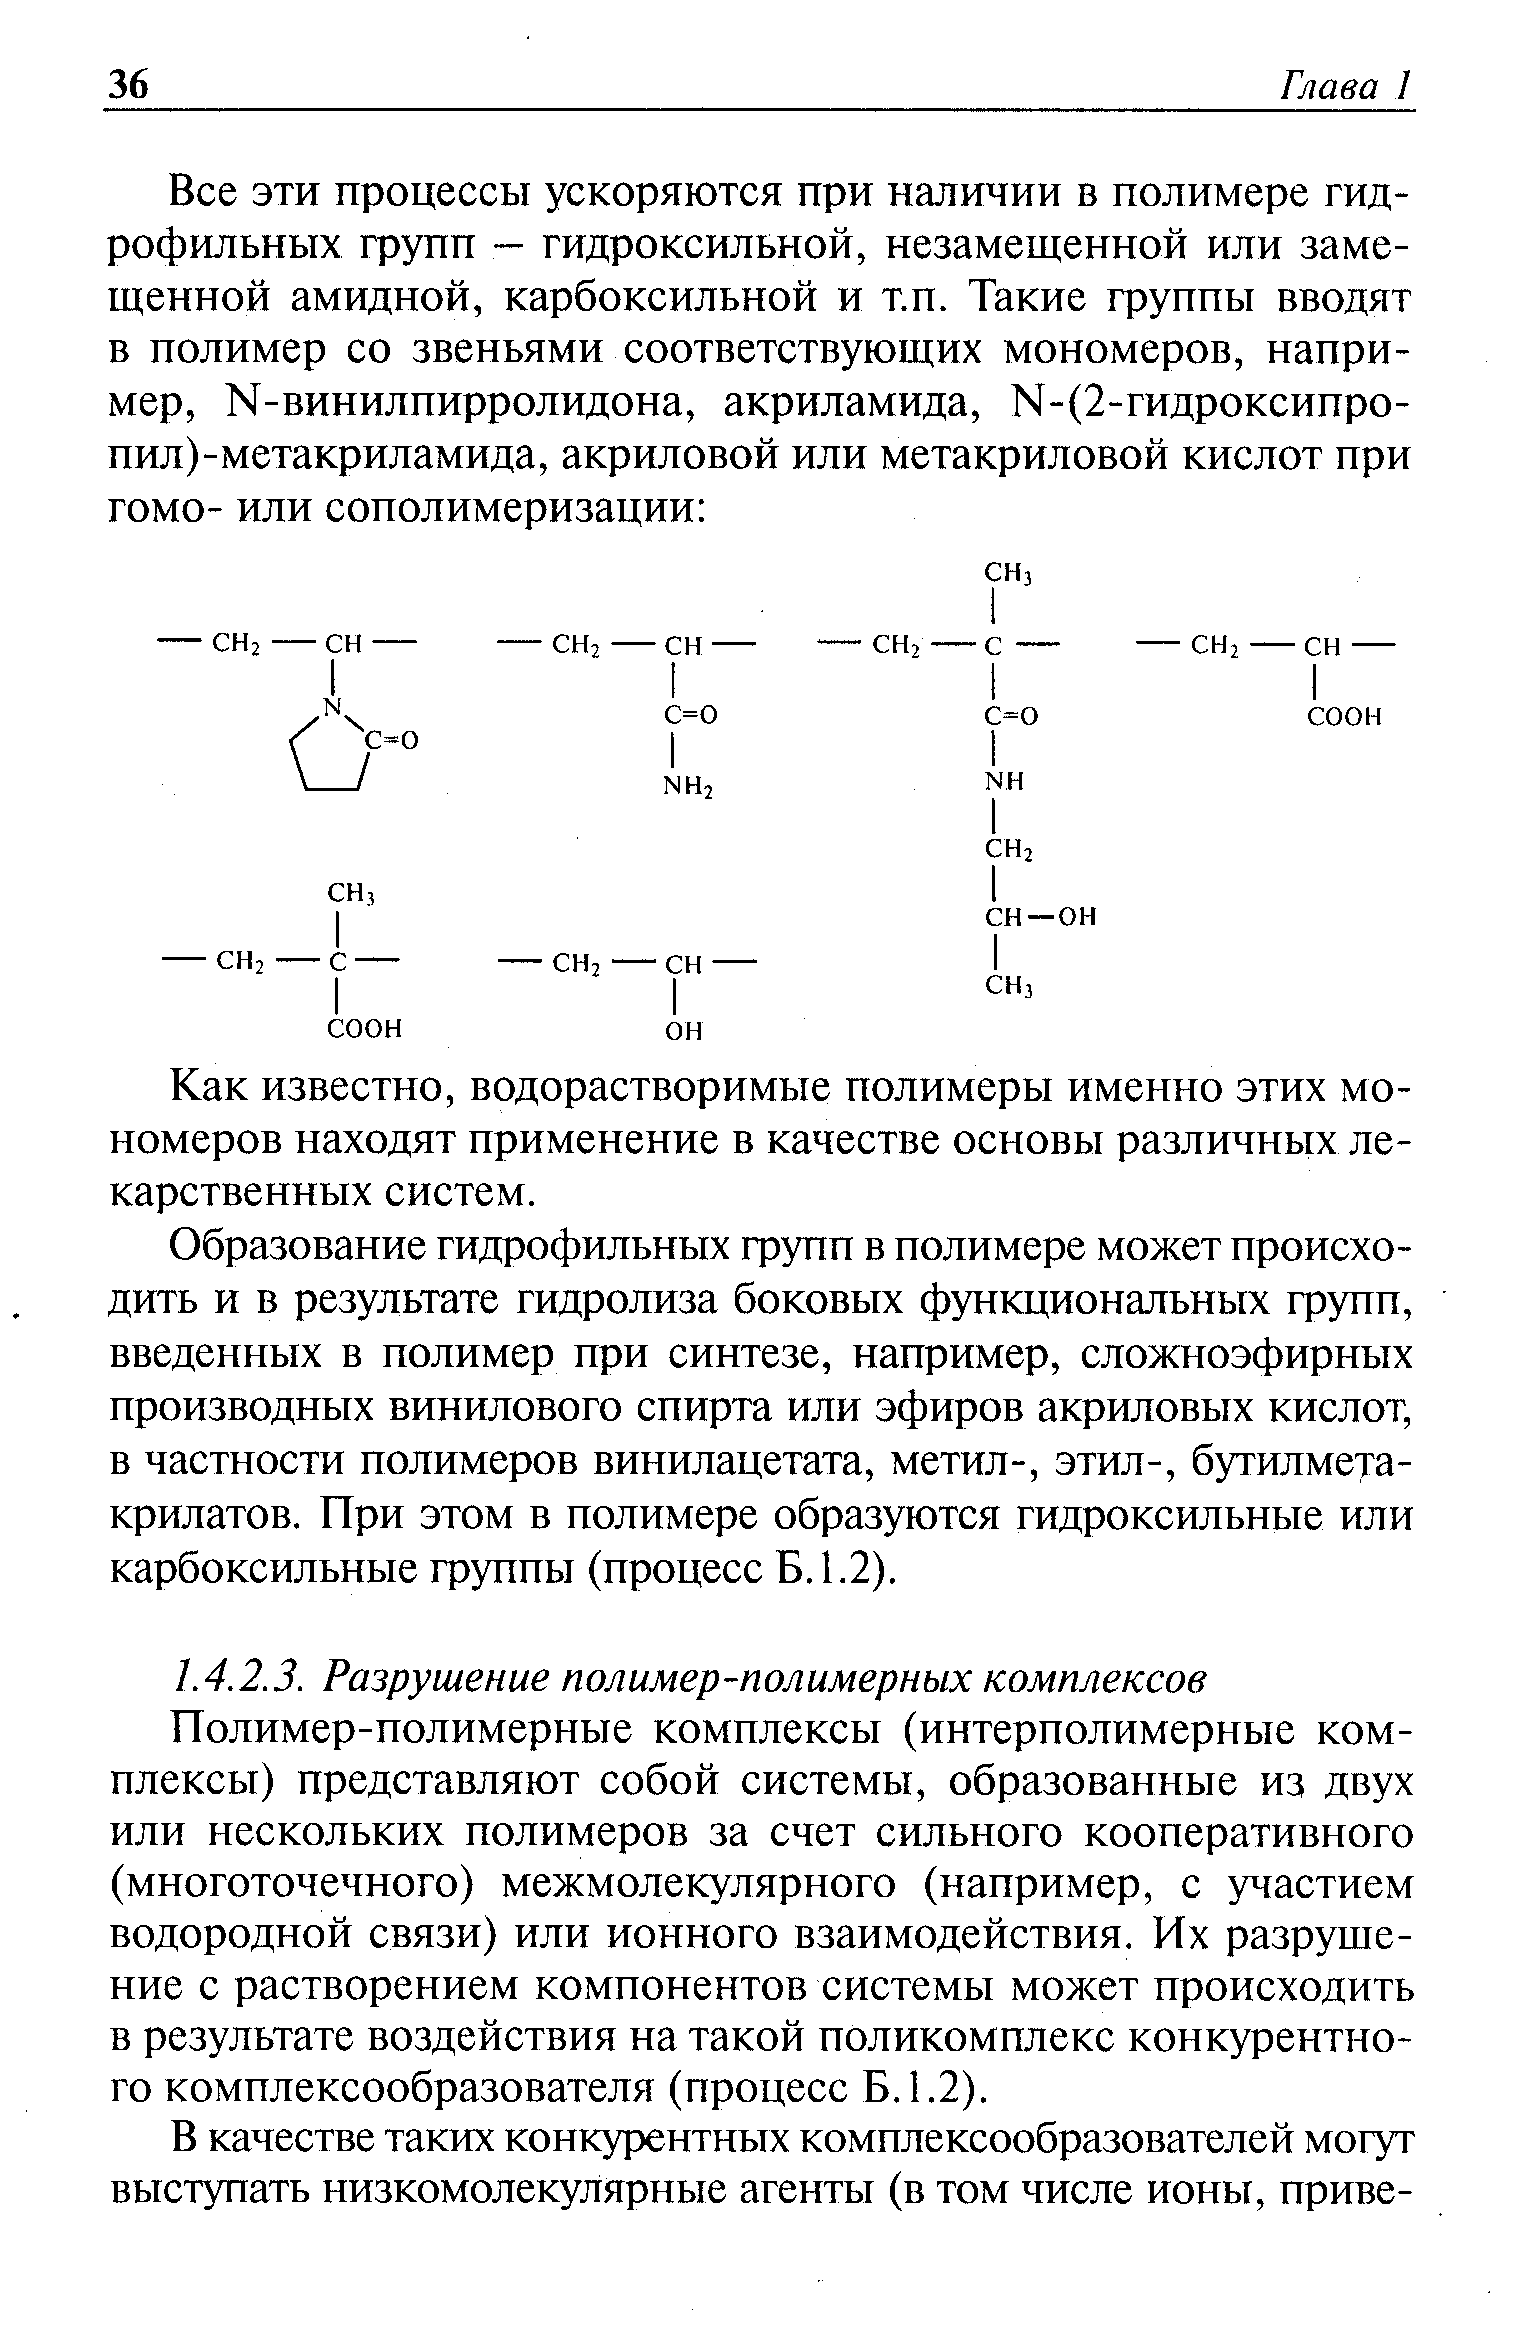 Полимер-полимерные комплексы (интерполимерные комплексы) представляют собой системы, образованные из двух или нескольких полимеров за счет сильного кооперативного (многоточечного) межмолекулярного (например, с участием водородной связи) или ионного взаимодействия. Их разрушение с растворением компонентов системы может происходить в результате воздействия на такой поликомплекс конкурентного комплексообразователя (процесс Б. 1.2).